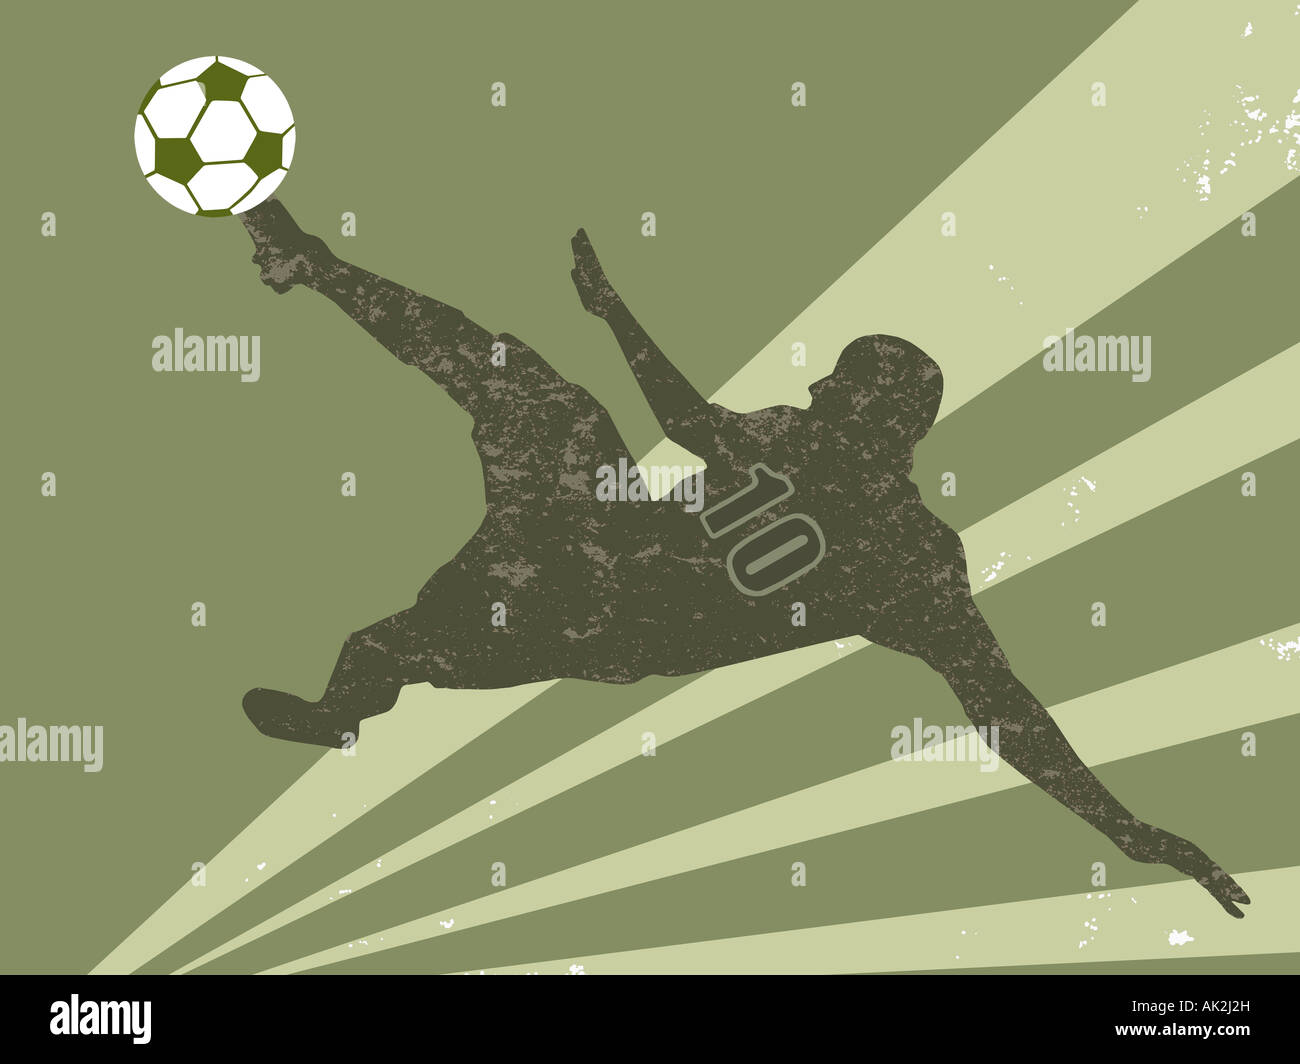 El futbolista en mitad del aire pateando una pelota de fútbol Foto de stock